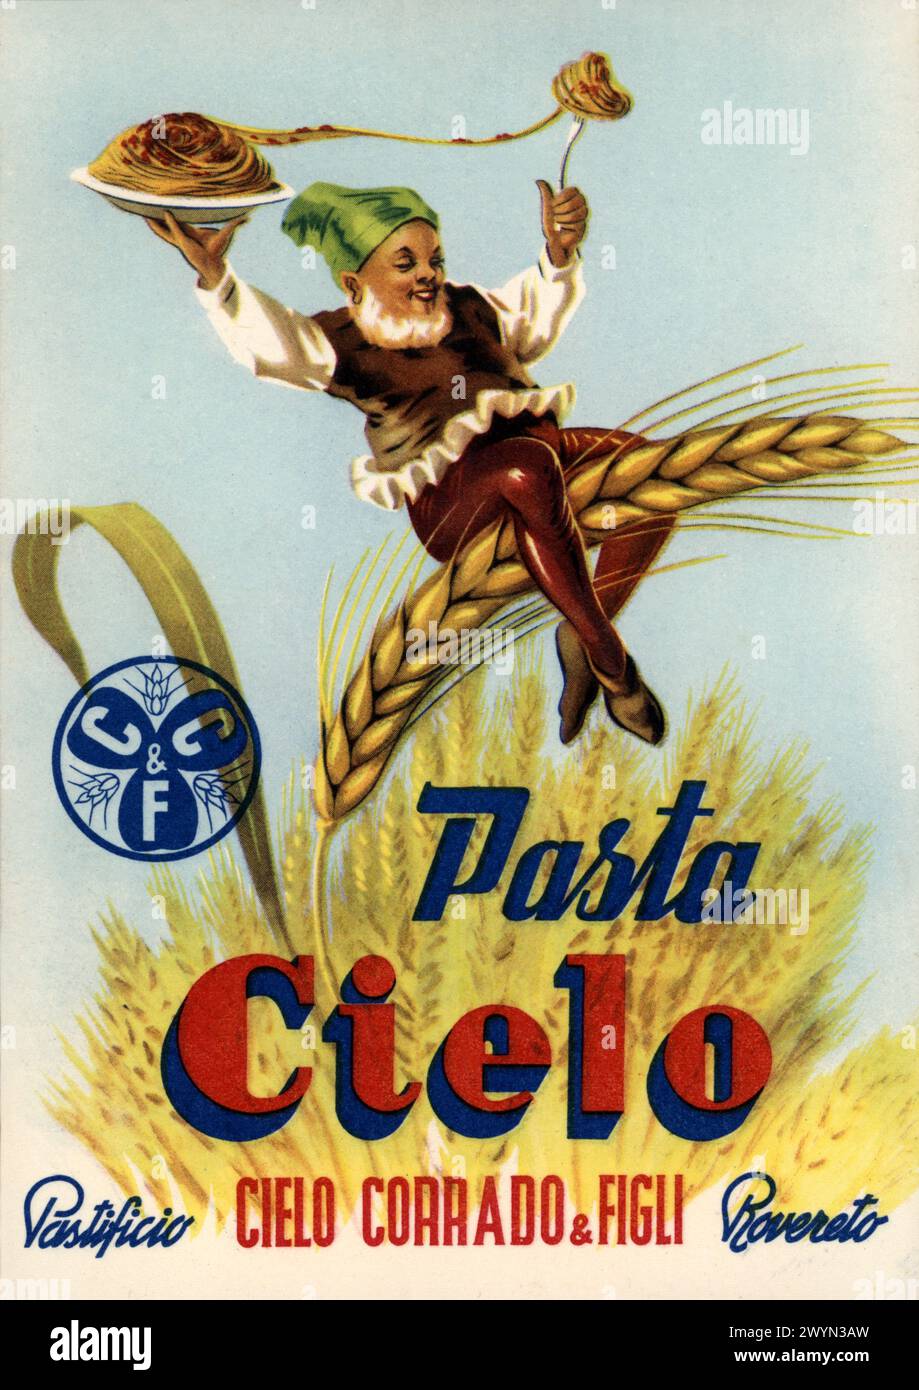 1955 c., Rovereto , Trient , TRENTINO , ITALIEN : italienisches Werbeplakat für die PASTA CIELO Werbung. Der Pastificio Corrado Cielo & Figli war eine berühmte Nudelfabrik in Rovereto (Trient). Kunstwerk eines unbekannten Illustrators. - PASTIFICIO - SPAGHETTI - SPIGA DI GRANO - EAR OF CORN - FOLLETTO - ELF - IMP - ELFIN - PIXIE - GNOMO - GNOME - GOBLIN - GREMLIN - PIXY - BOGY - SPRITE - PUBBLICITÀ - ILLUSTRATION - ILLUSTRAZIONE - ANNI CINQUANTA - 50'S - '50 - pubblicità - annuncio pubblicitario - Reclame - Werbung - Poster - Industrie - industria alimentare - ALIMENTO - ALIMENTI Stockfoto